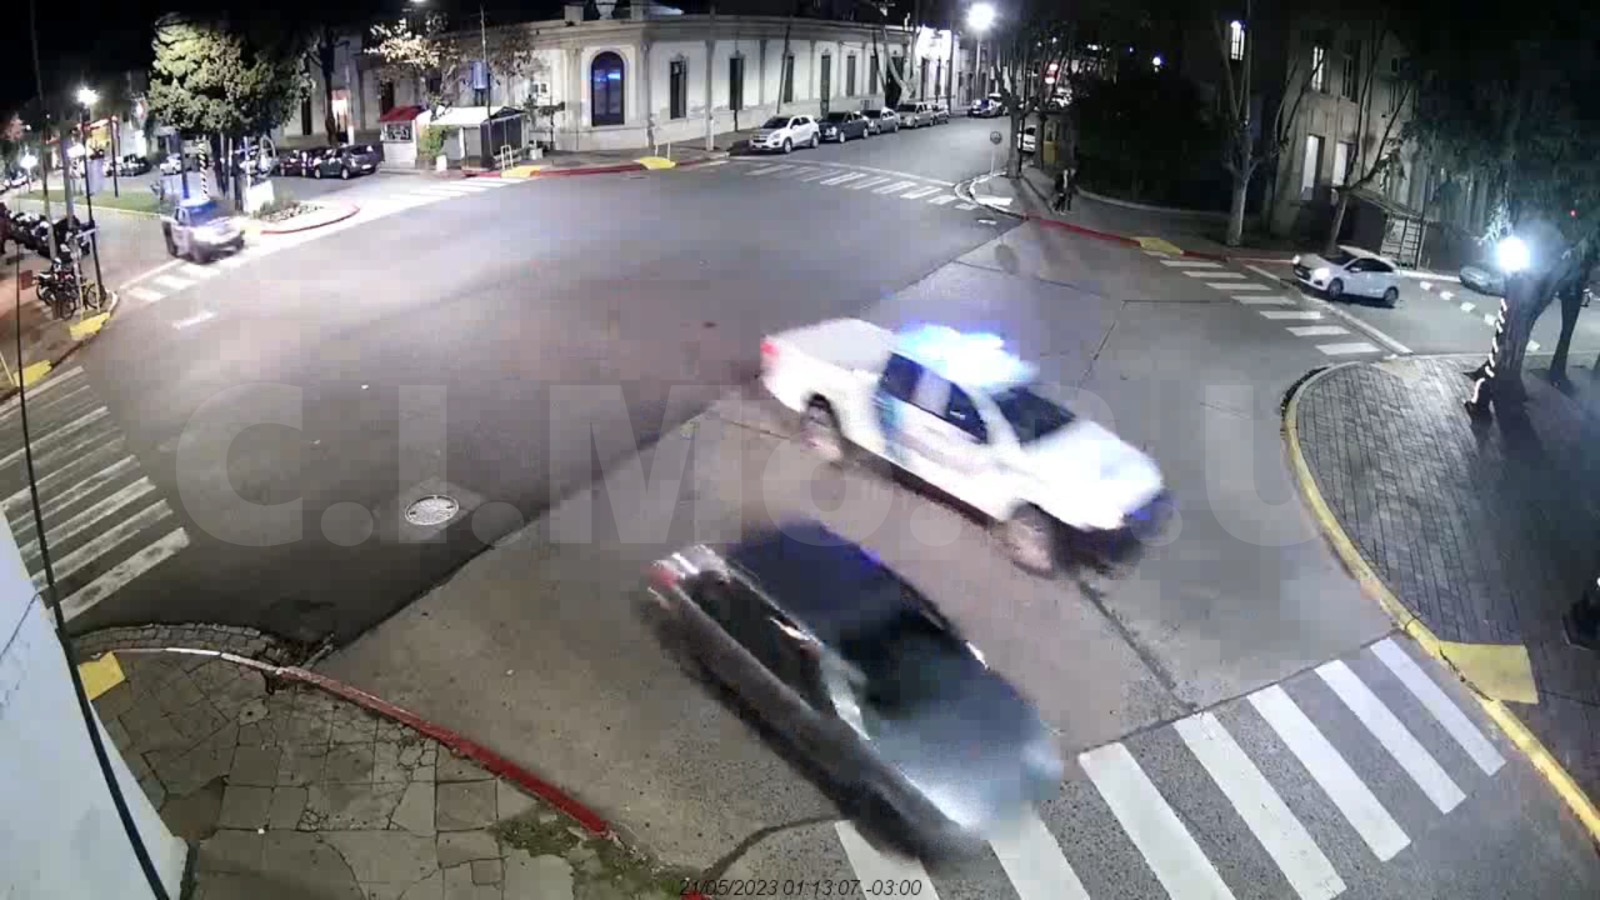 imagen borrosa de cámara de seguridad vista desde arriba de la avenida que muestra un auto seguido de un patrullero